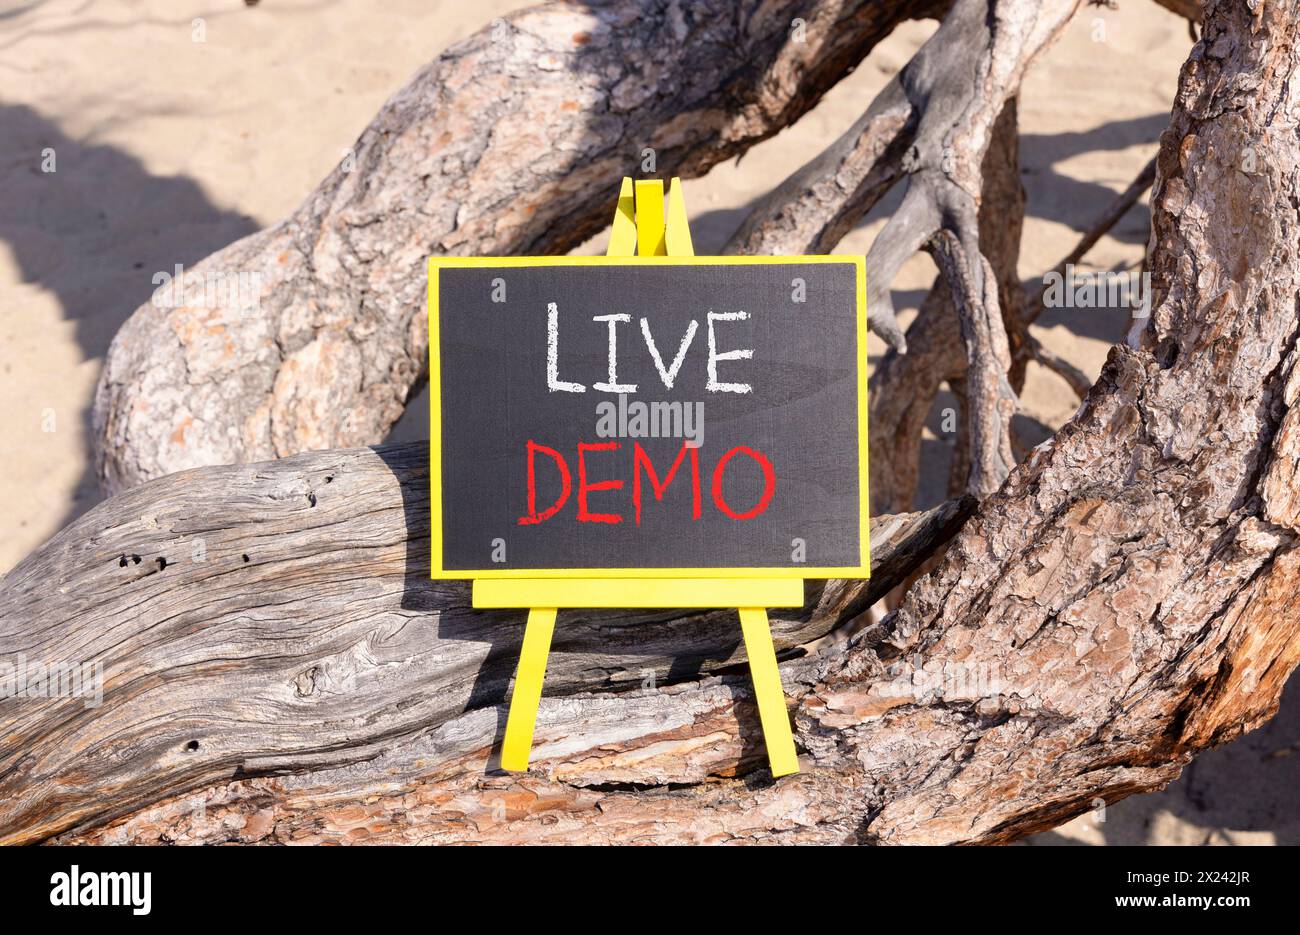 Simbolo demo dal vivo. Demo di Concept Words Live su una bellissima lavagna nera e gialla. Splendido sfondo di alberi. Copia spazio. Concetto di demo aziendali e live. Foto Stock